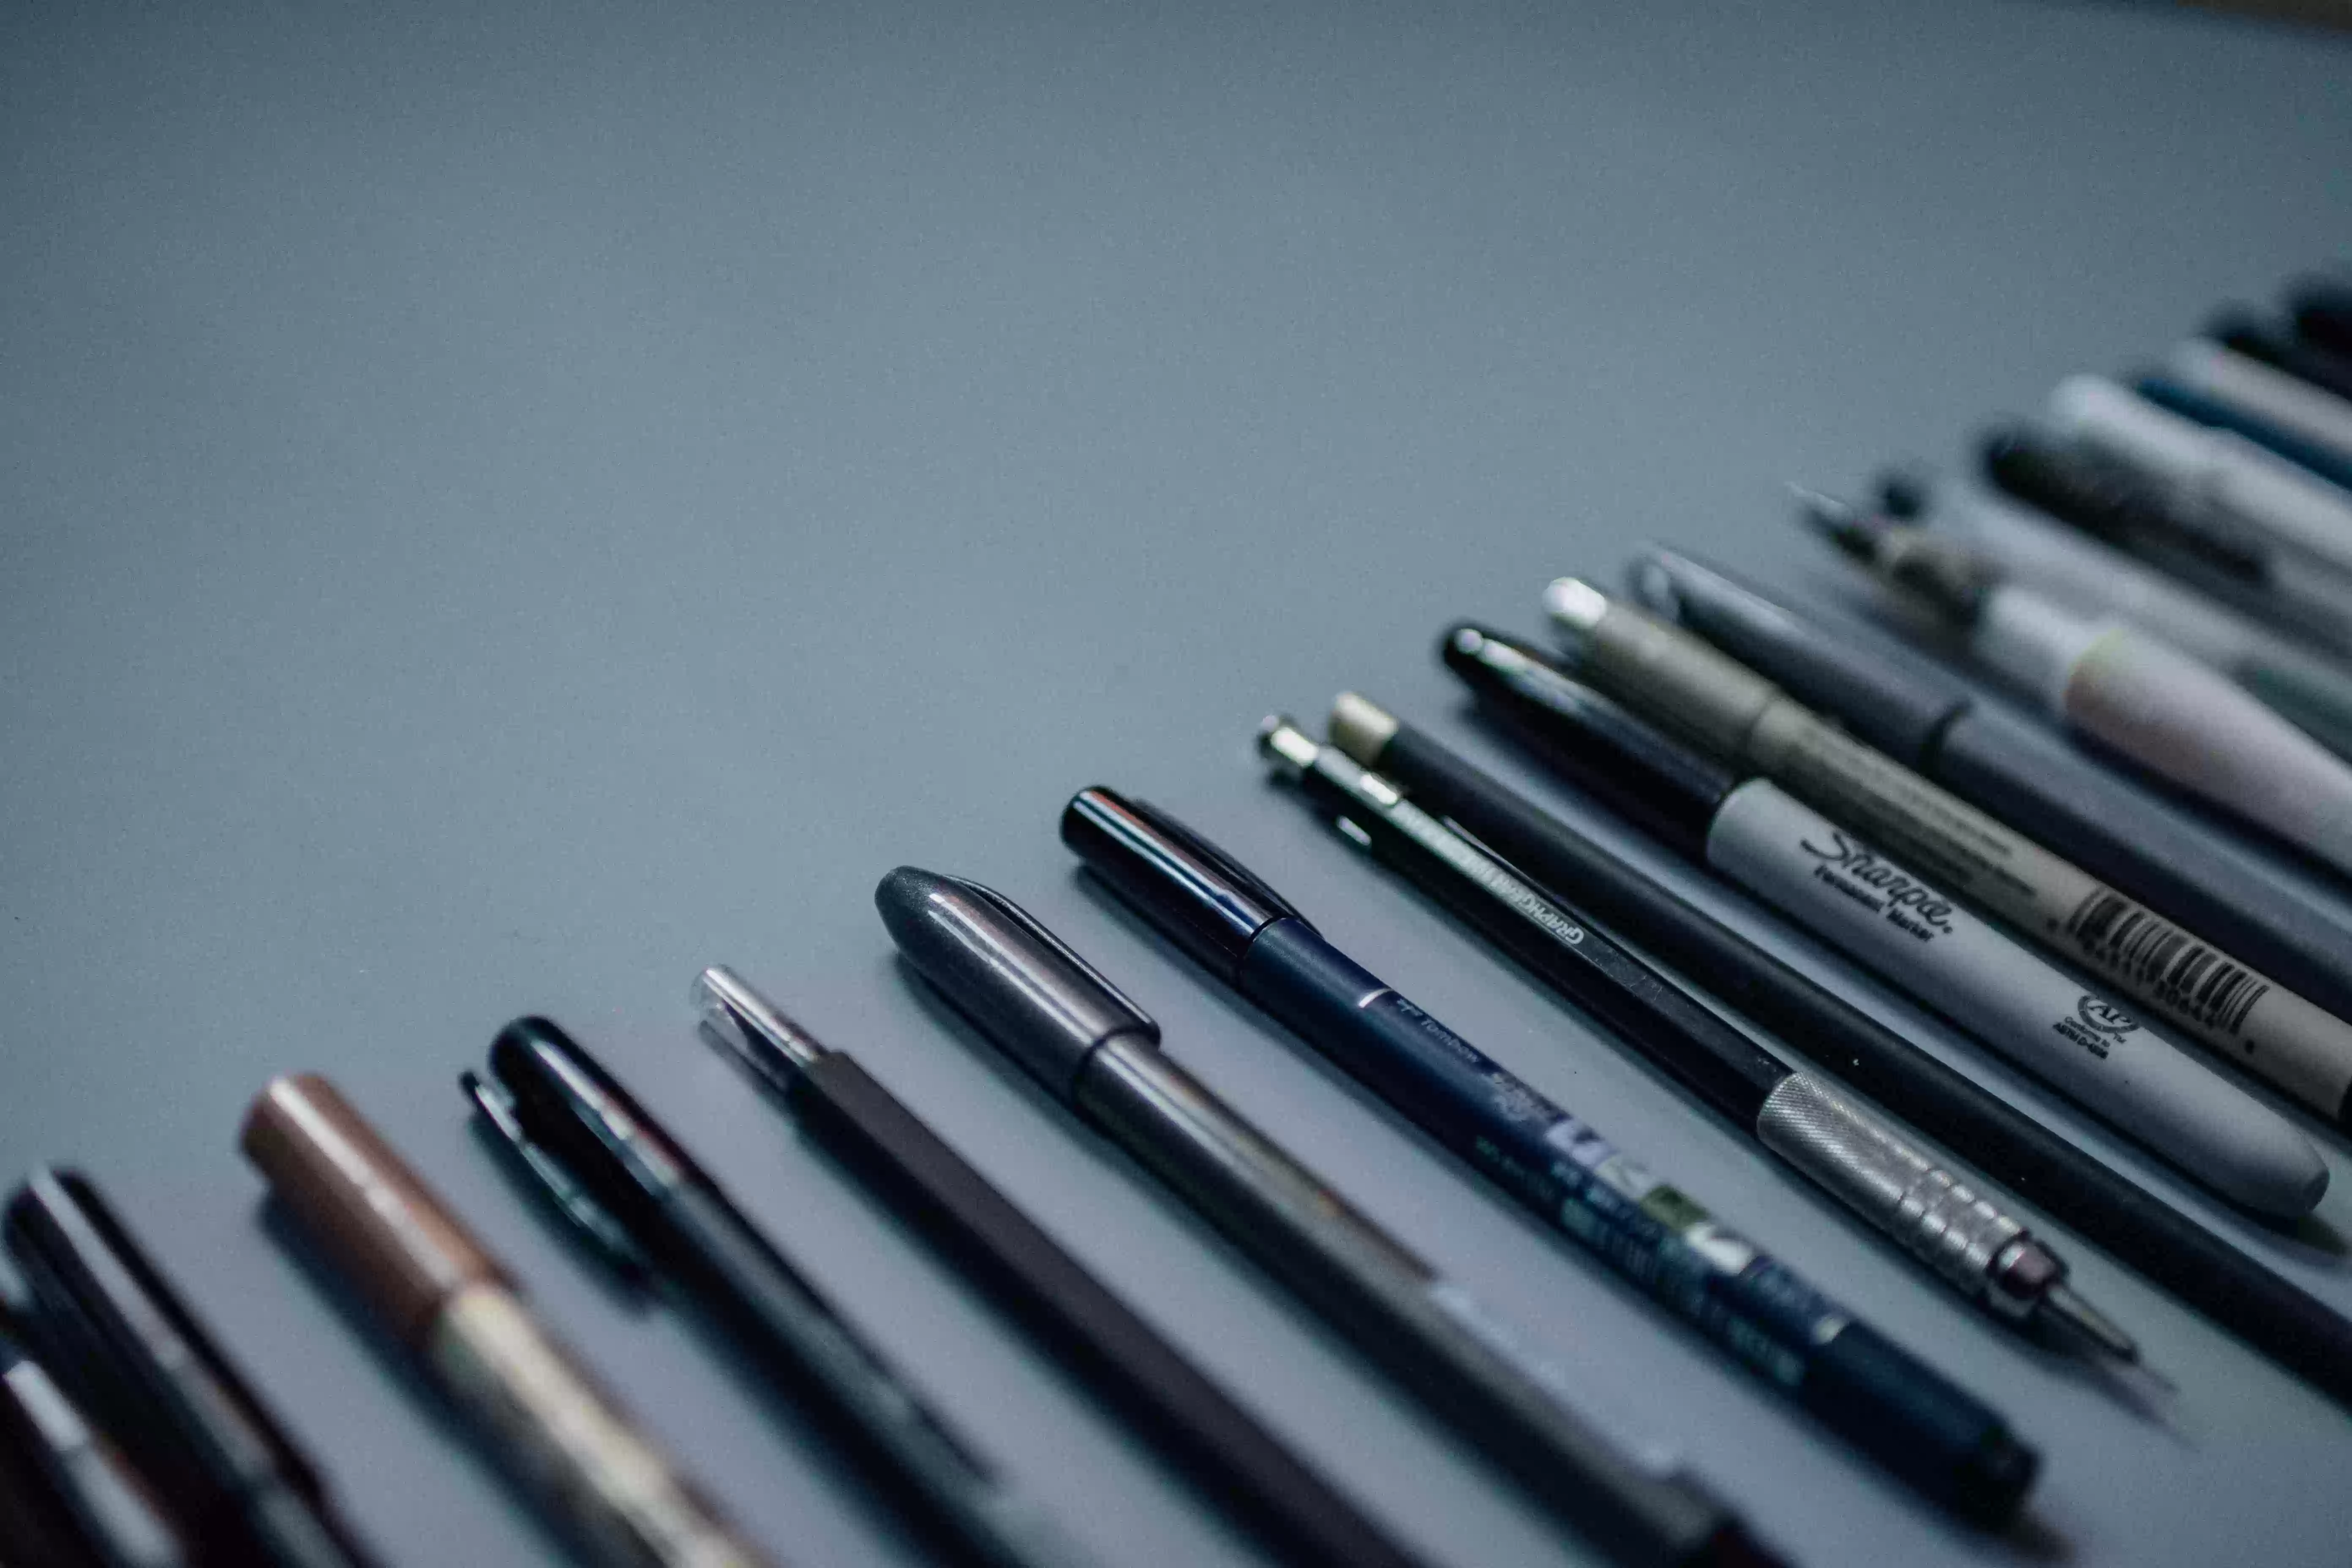 Le marché des stylos